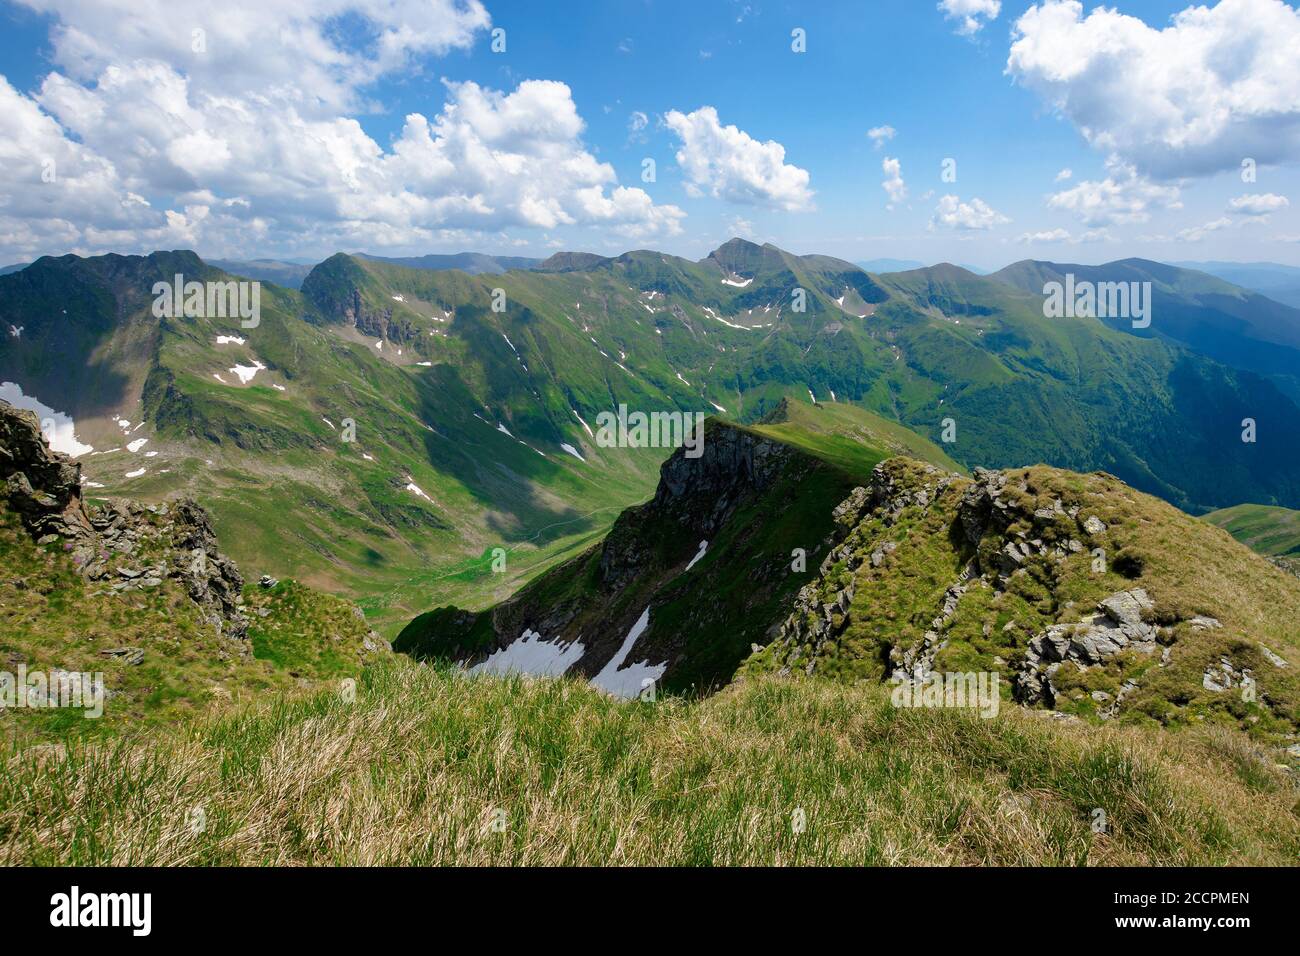 Bergkulisse von rumänien im Sommer. Gras auf den Wiesen und im Tal. Felsen und Schnee an den steilen Hängen. Wolken am Himmel. Sonniges Wetter Stockfoto